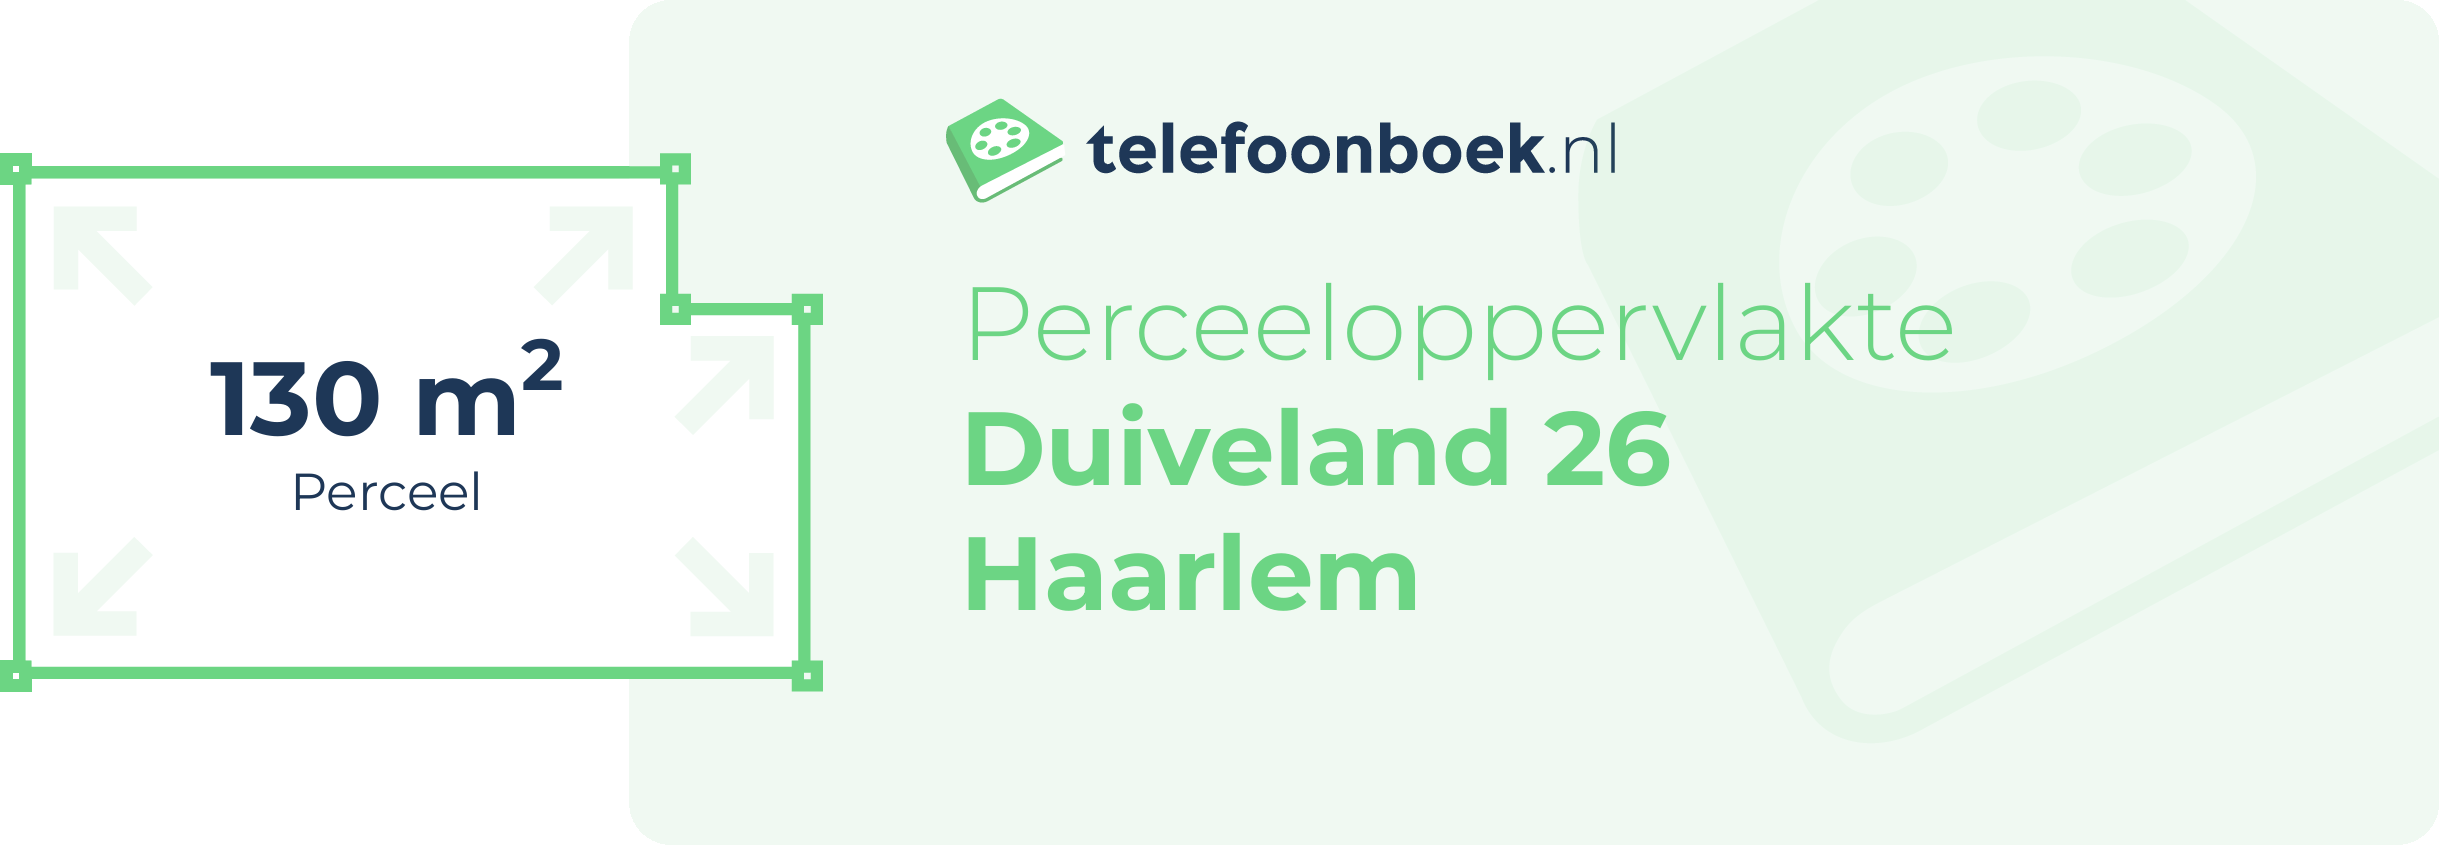 Perceeloppervlakte Duiveland 26 Haarlem